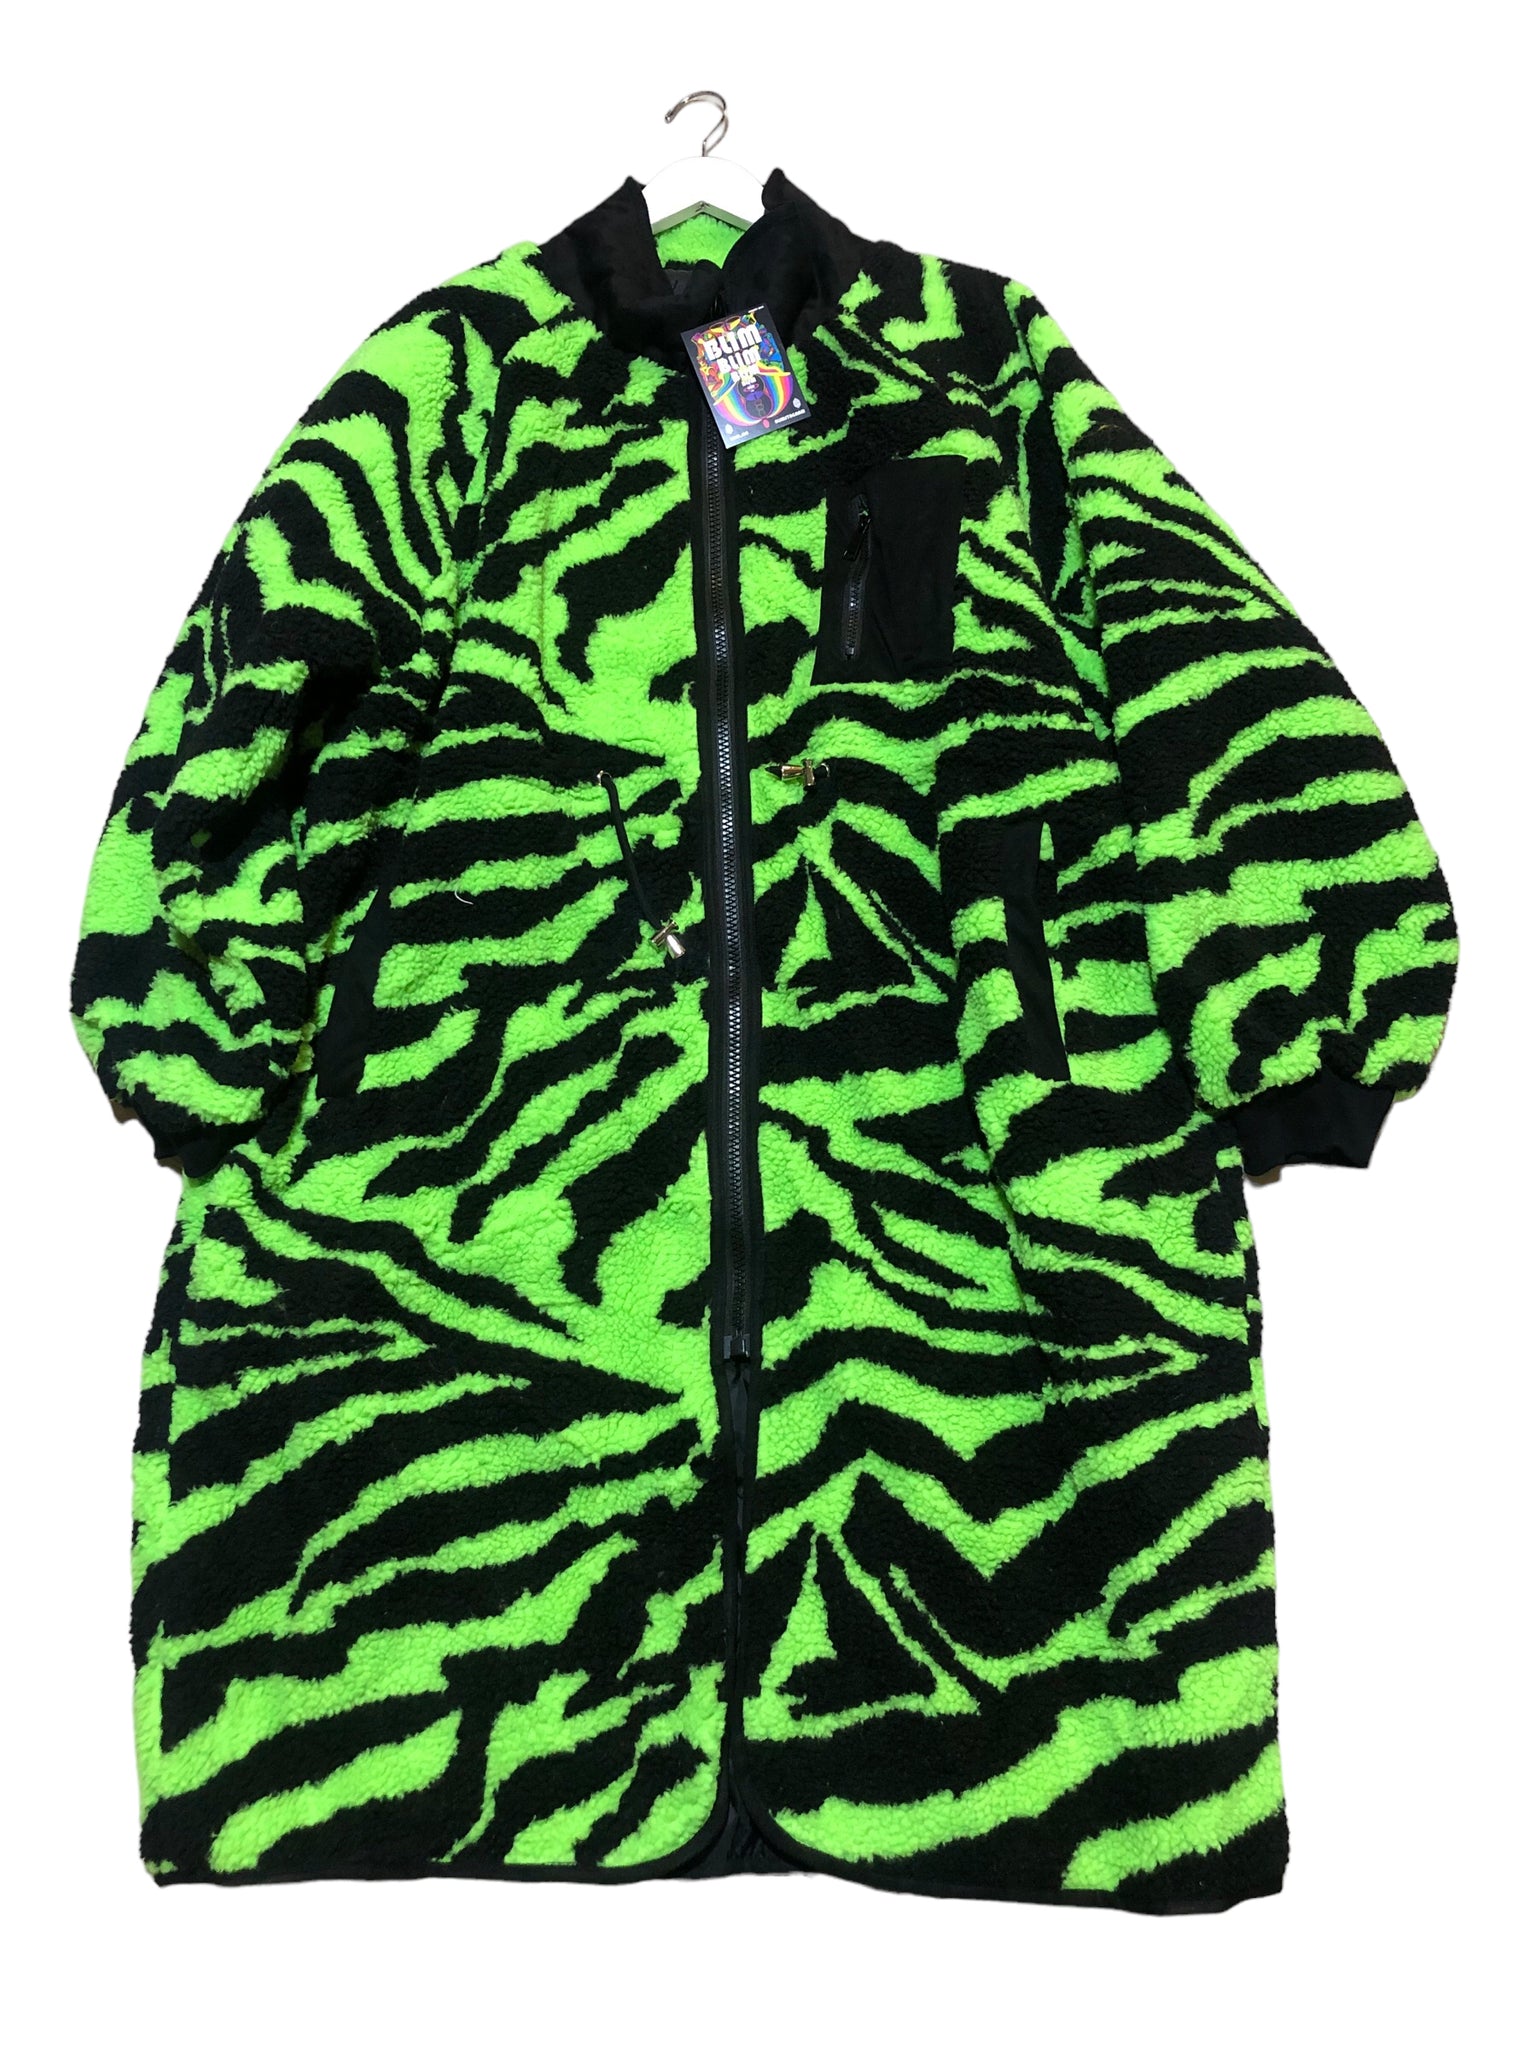 BACK IN STOCK! Neon Zebra Patterned Fleece Long Jacket